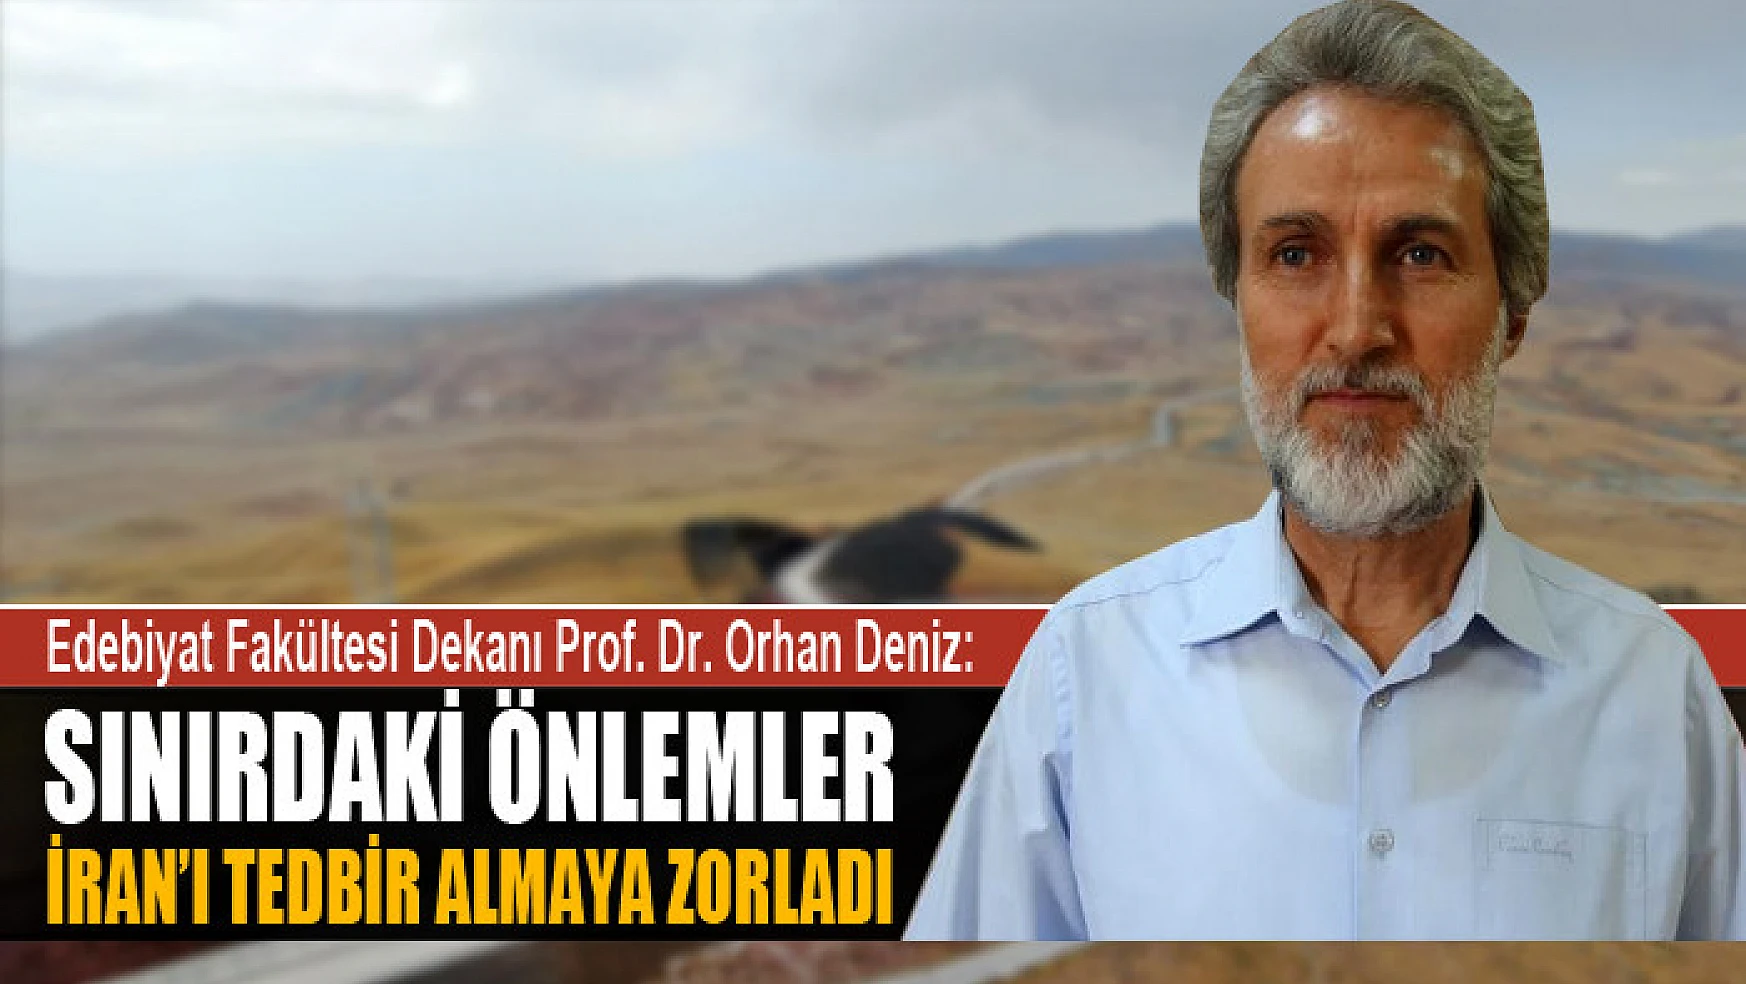 Prof. Dr. Deniz: Sınırdaki önlemler, İran'ı tedbir almaya zorladı